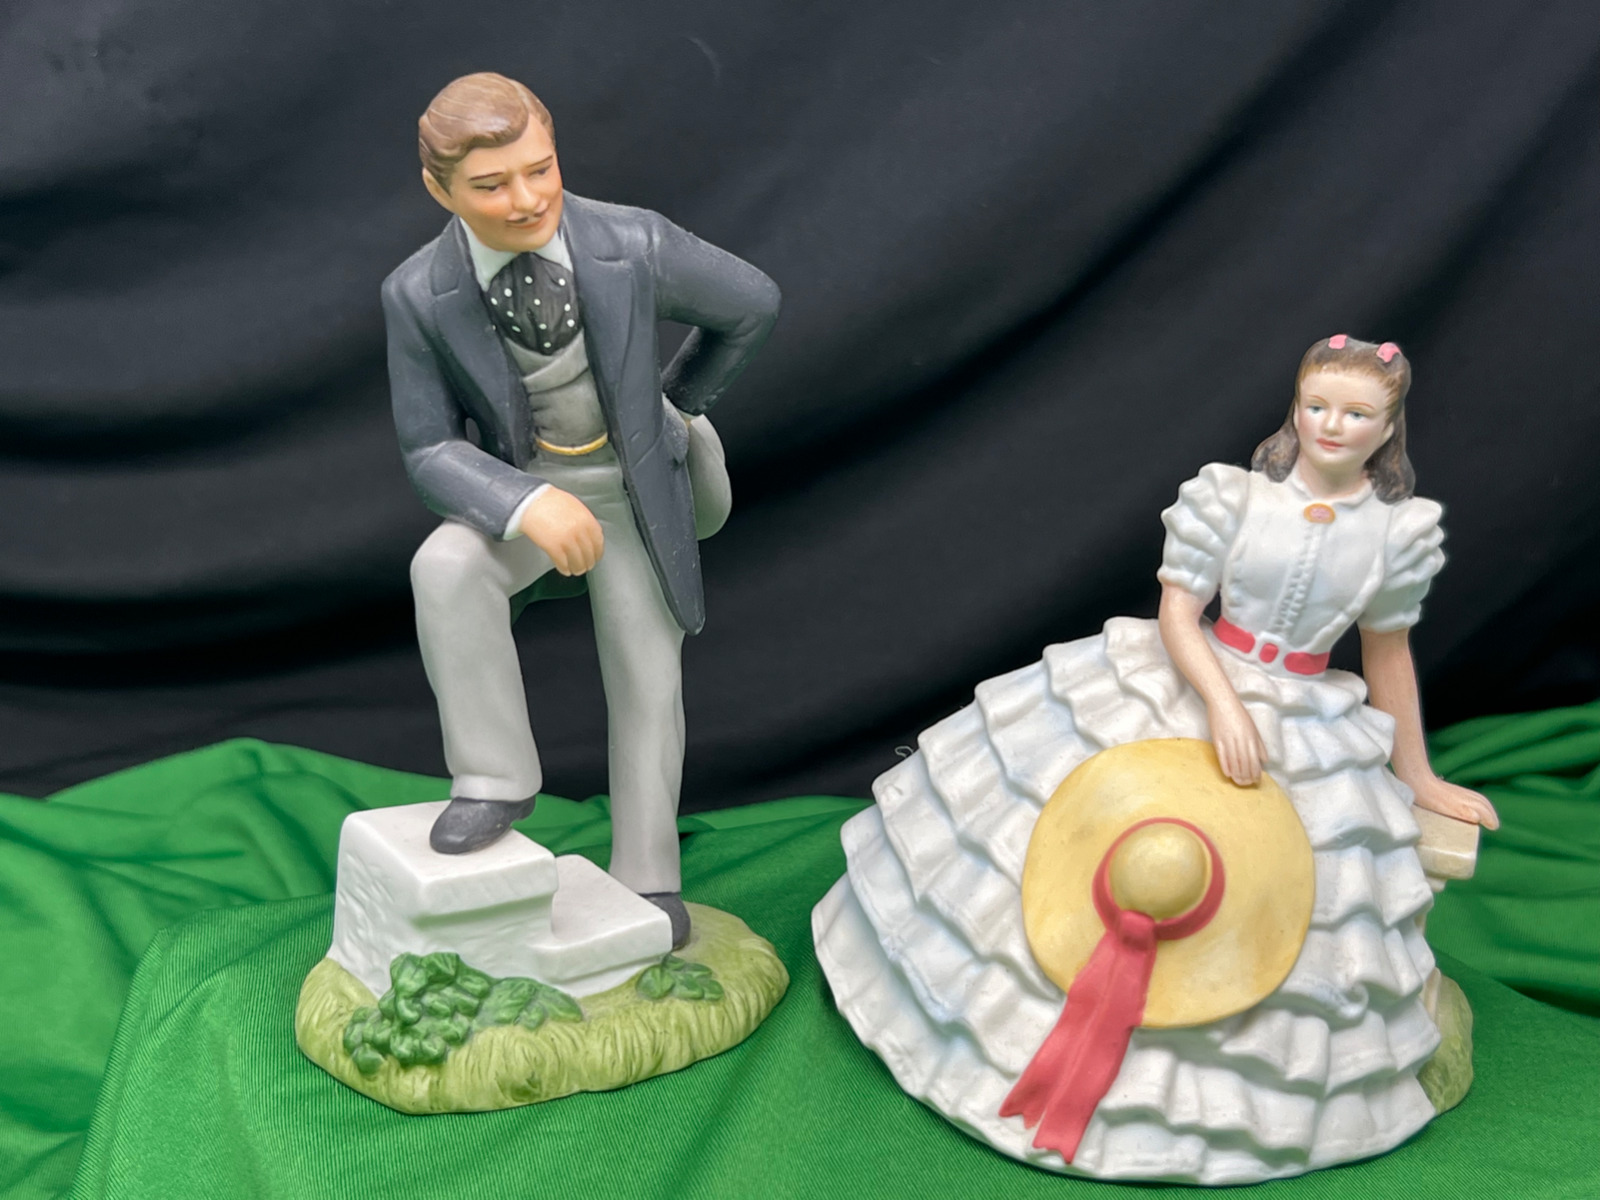 Rhett Butler & Scarlett O'Hara Porcelain Figurines, "Gone with the Wind" Avon